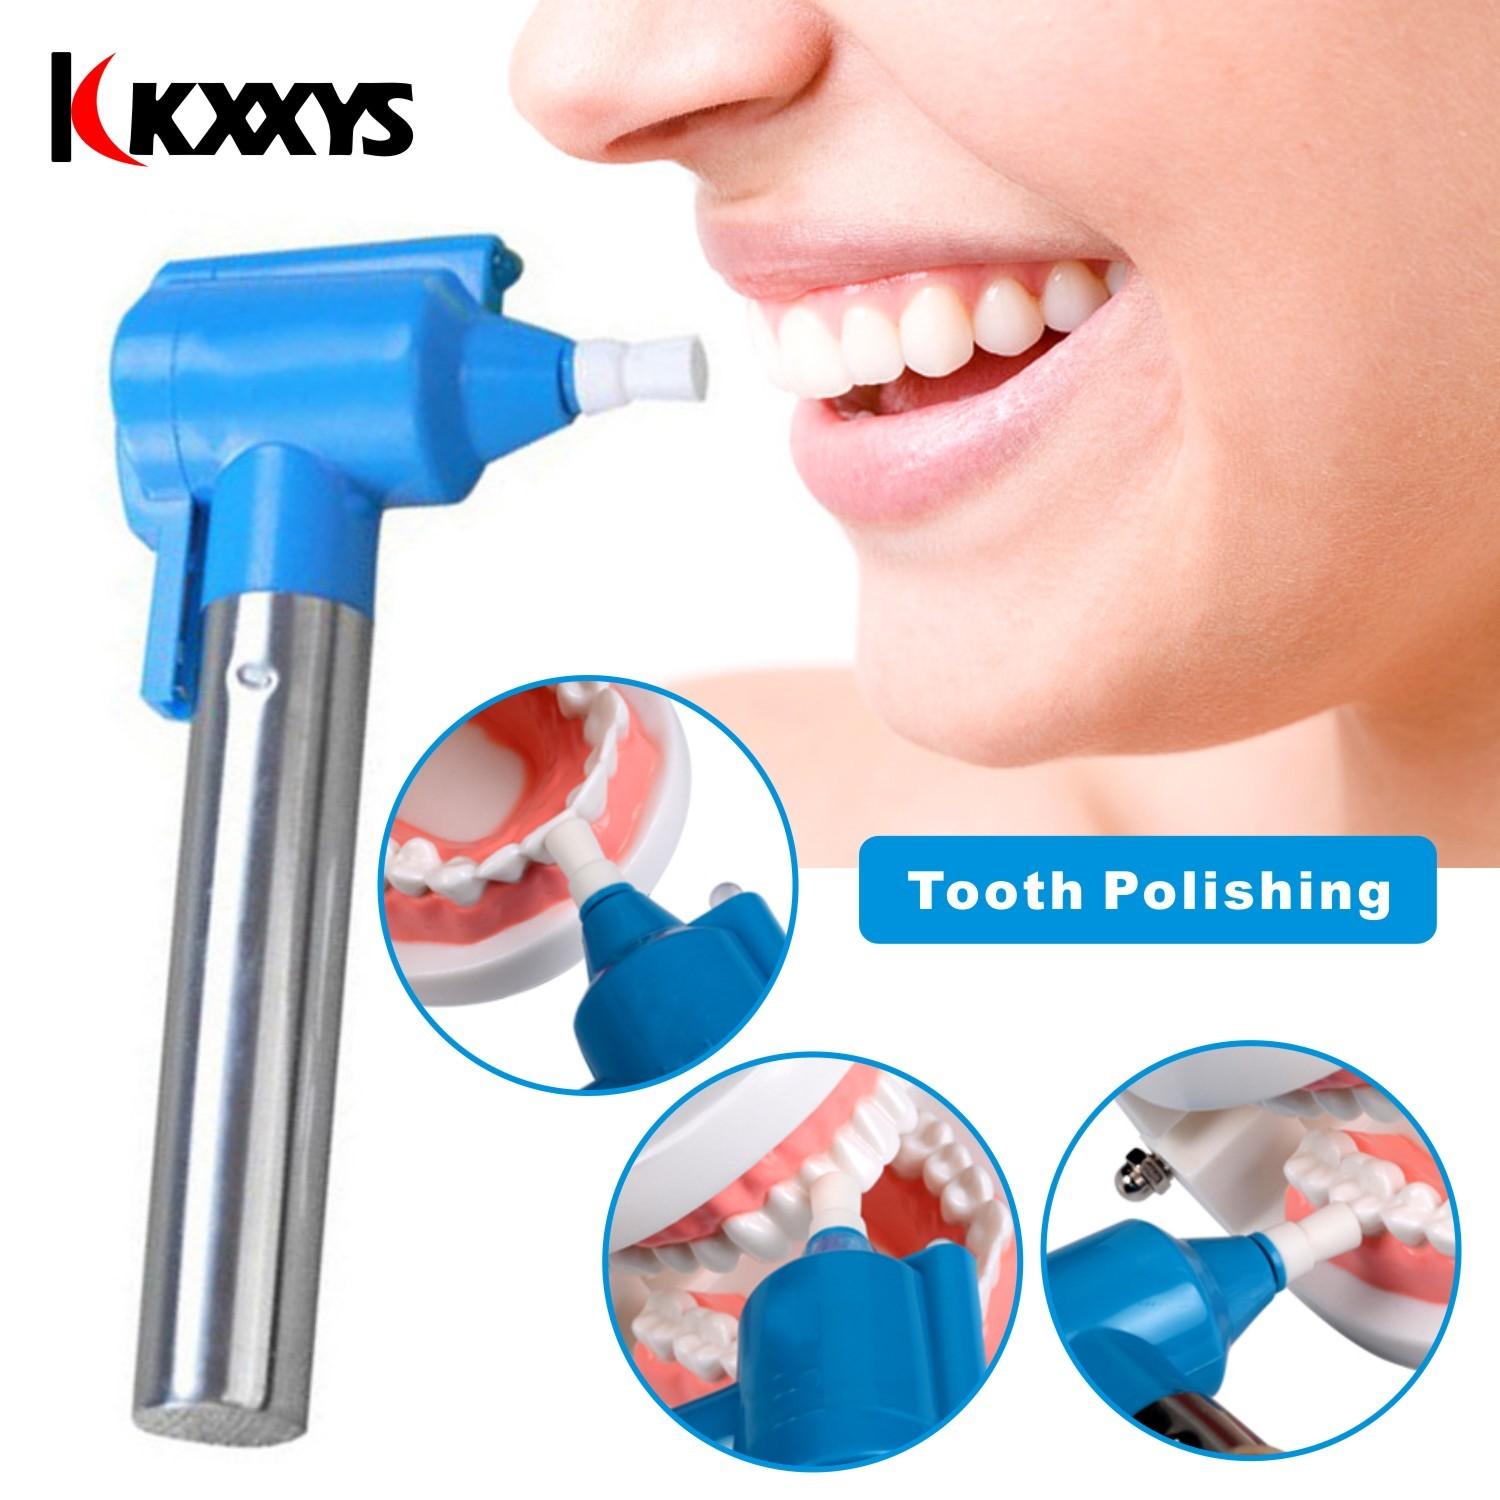 Изображение товара: KKXXYS отбеливающая Полировка для зубов для ухода за полостью рта и зубов/прибор для полировки, отбеливания, удаления пятен